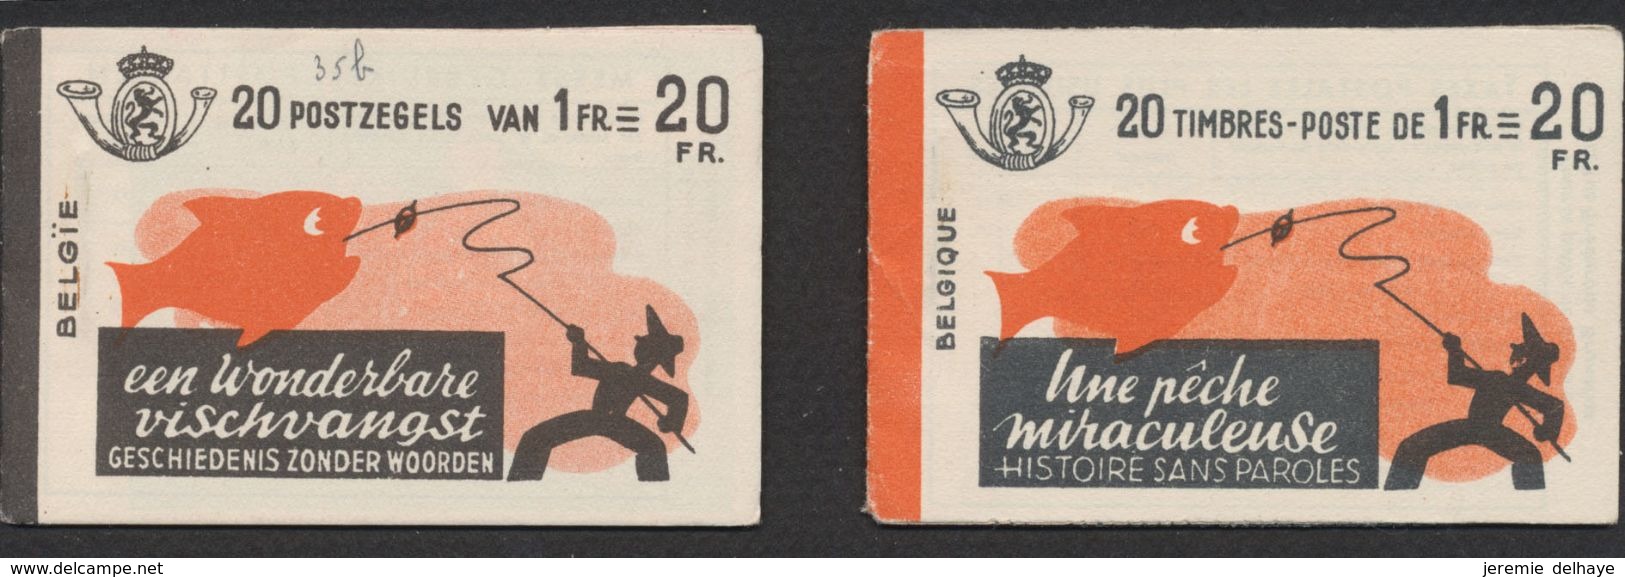 Carnet De Timbre Poste (1941) - Lot De 2 Carnets A35a ** Et A35b ** "Une Pêche Miraculeuse" (FR / NL) 20F, MNH / N°528 - 1907-1941 Old [A]